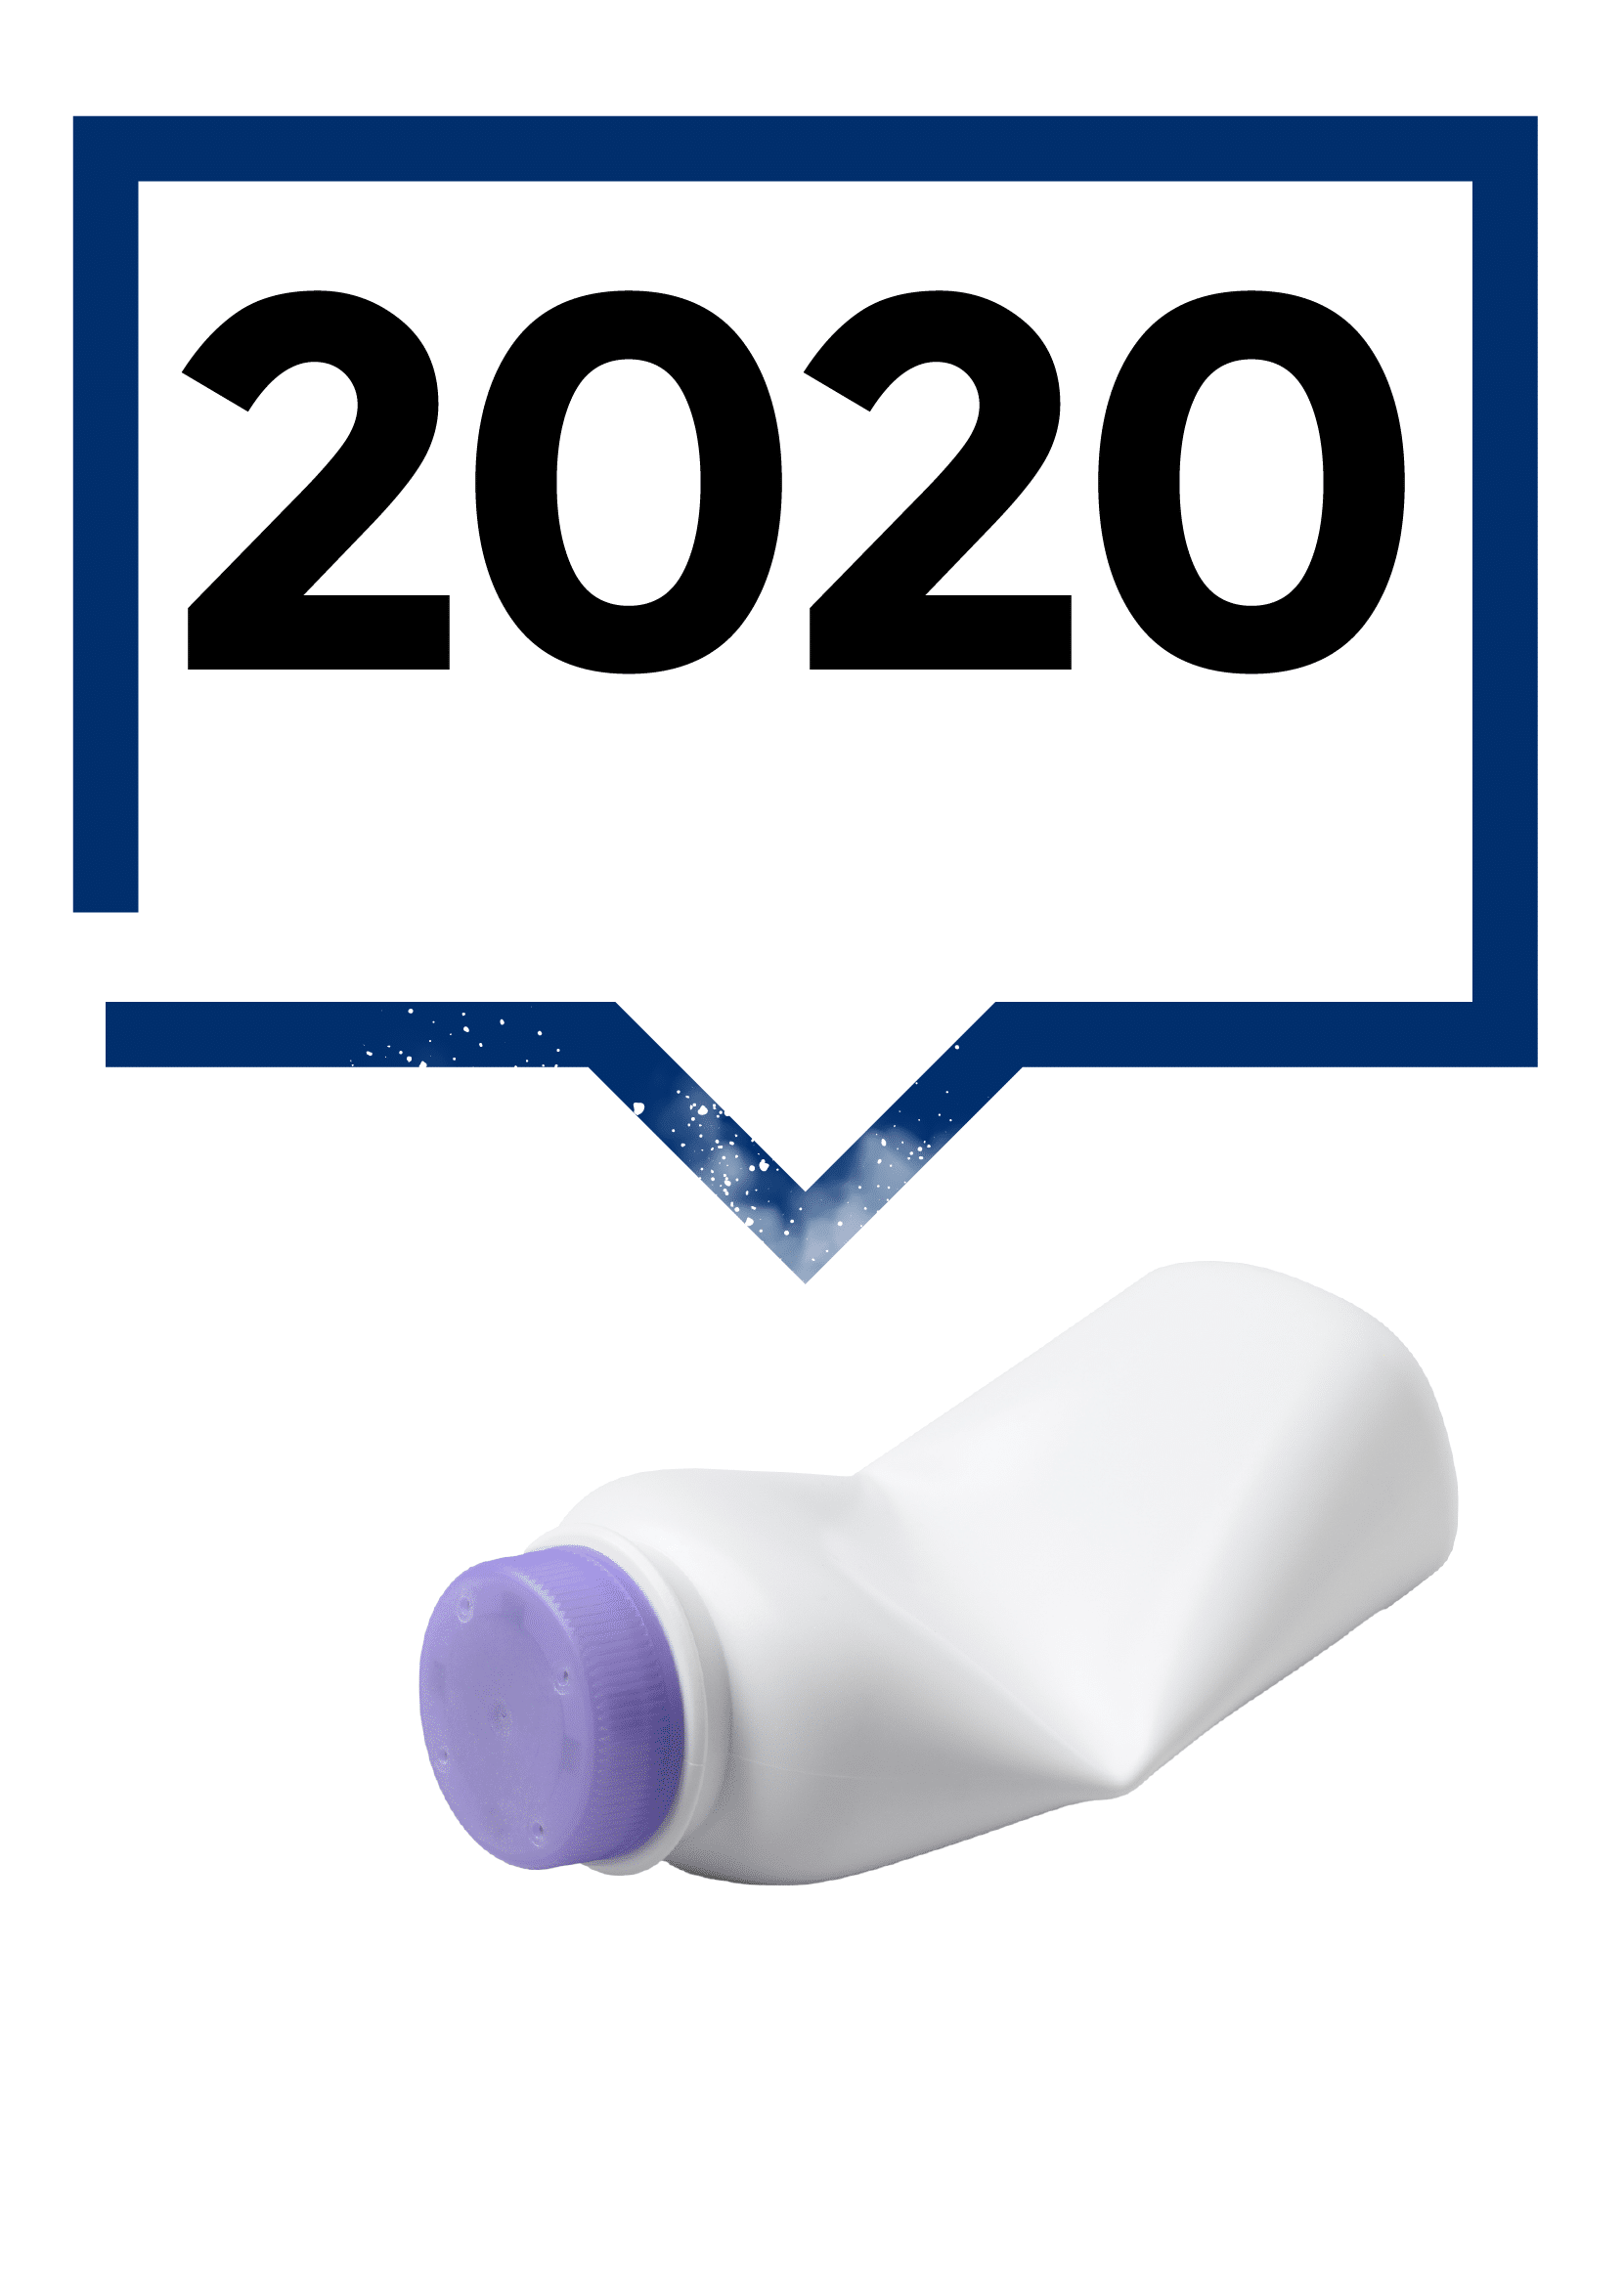 2020 - Powder